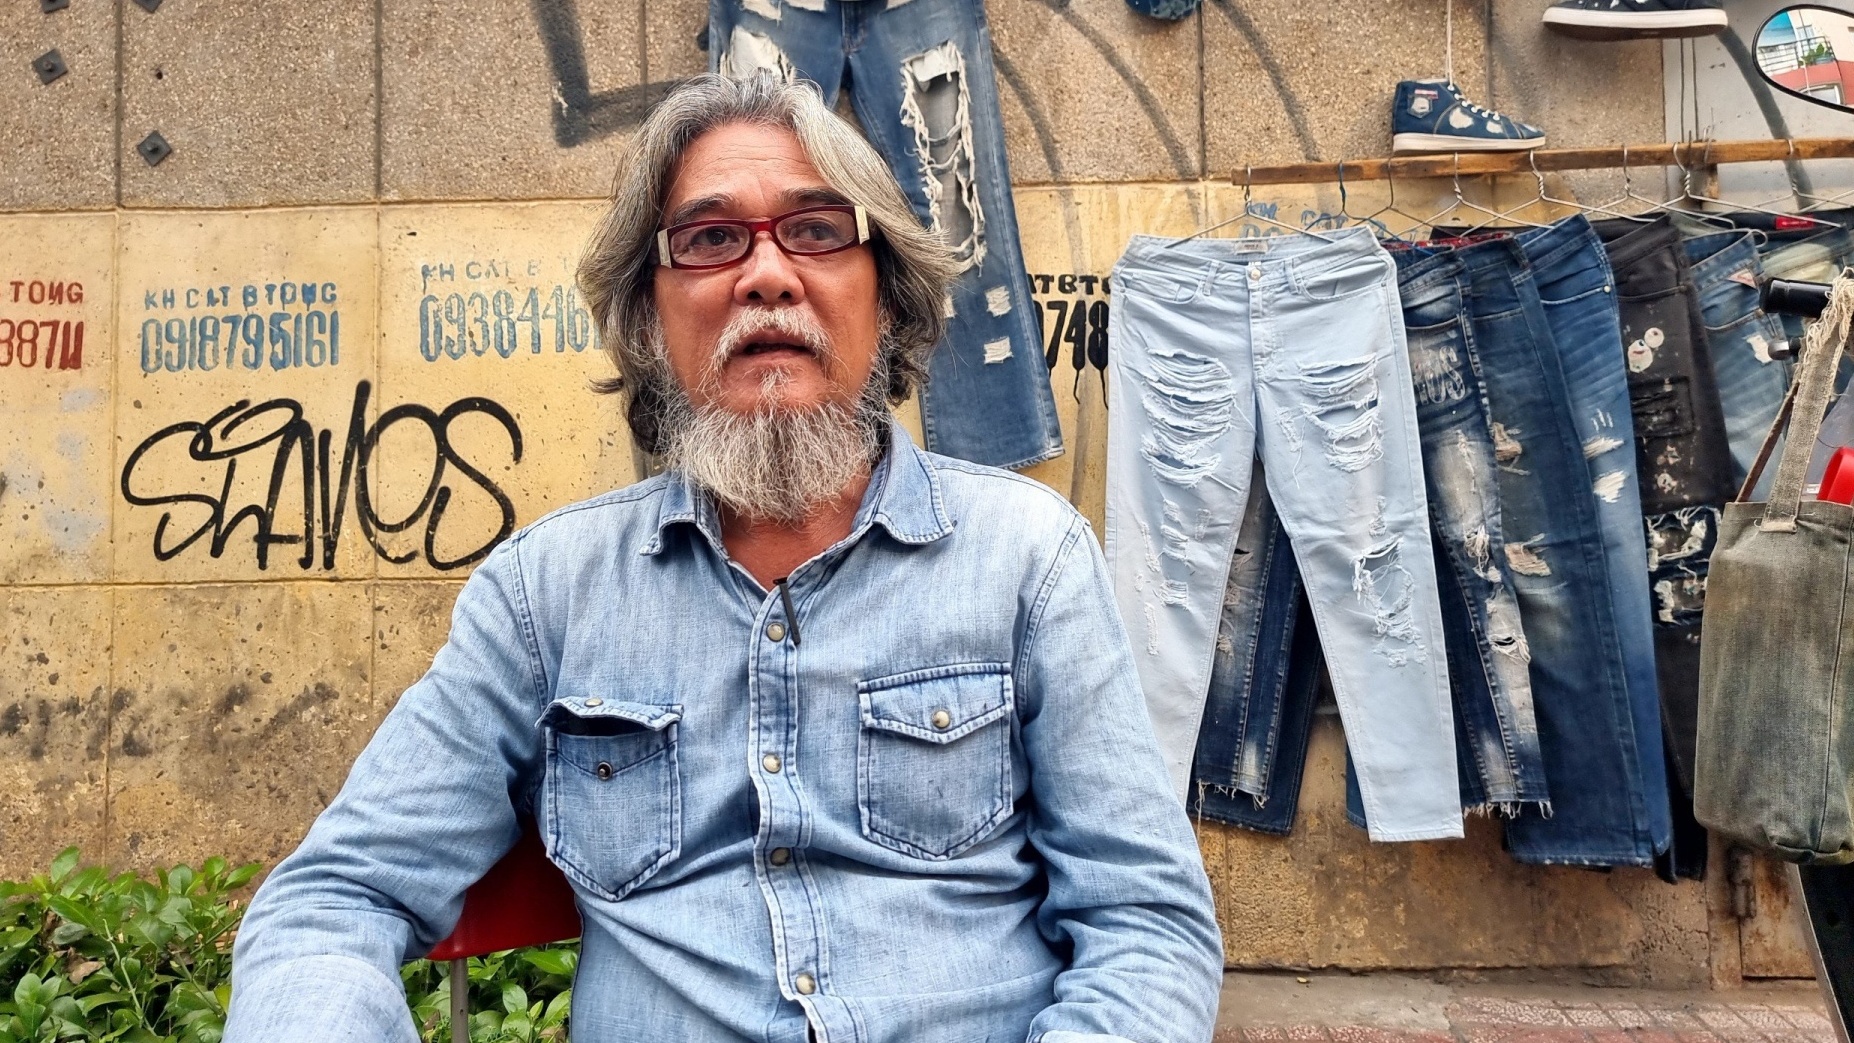 Nghệ sĩ hơn 30 năm làm nghề xé quần jeans trên vỉa hè TP. HCM